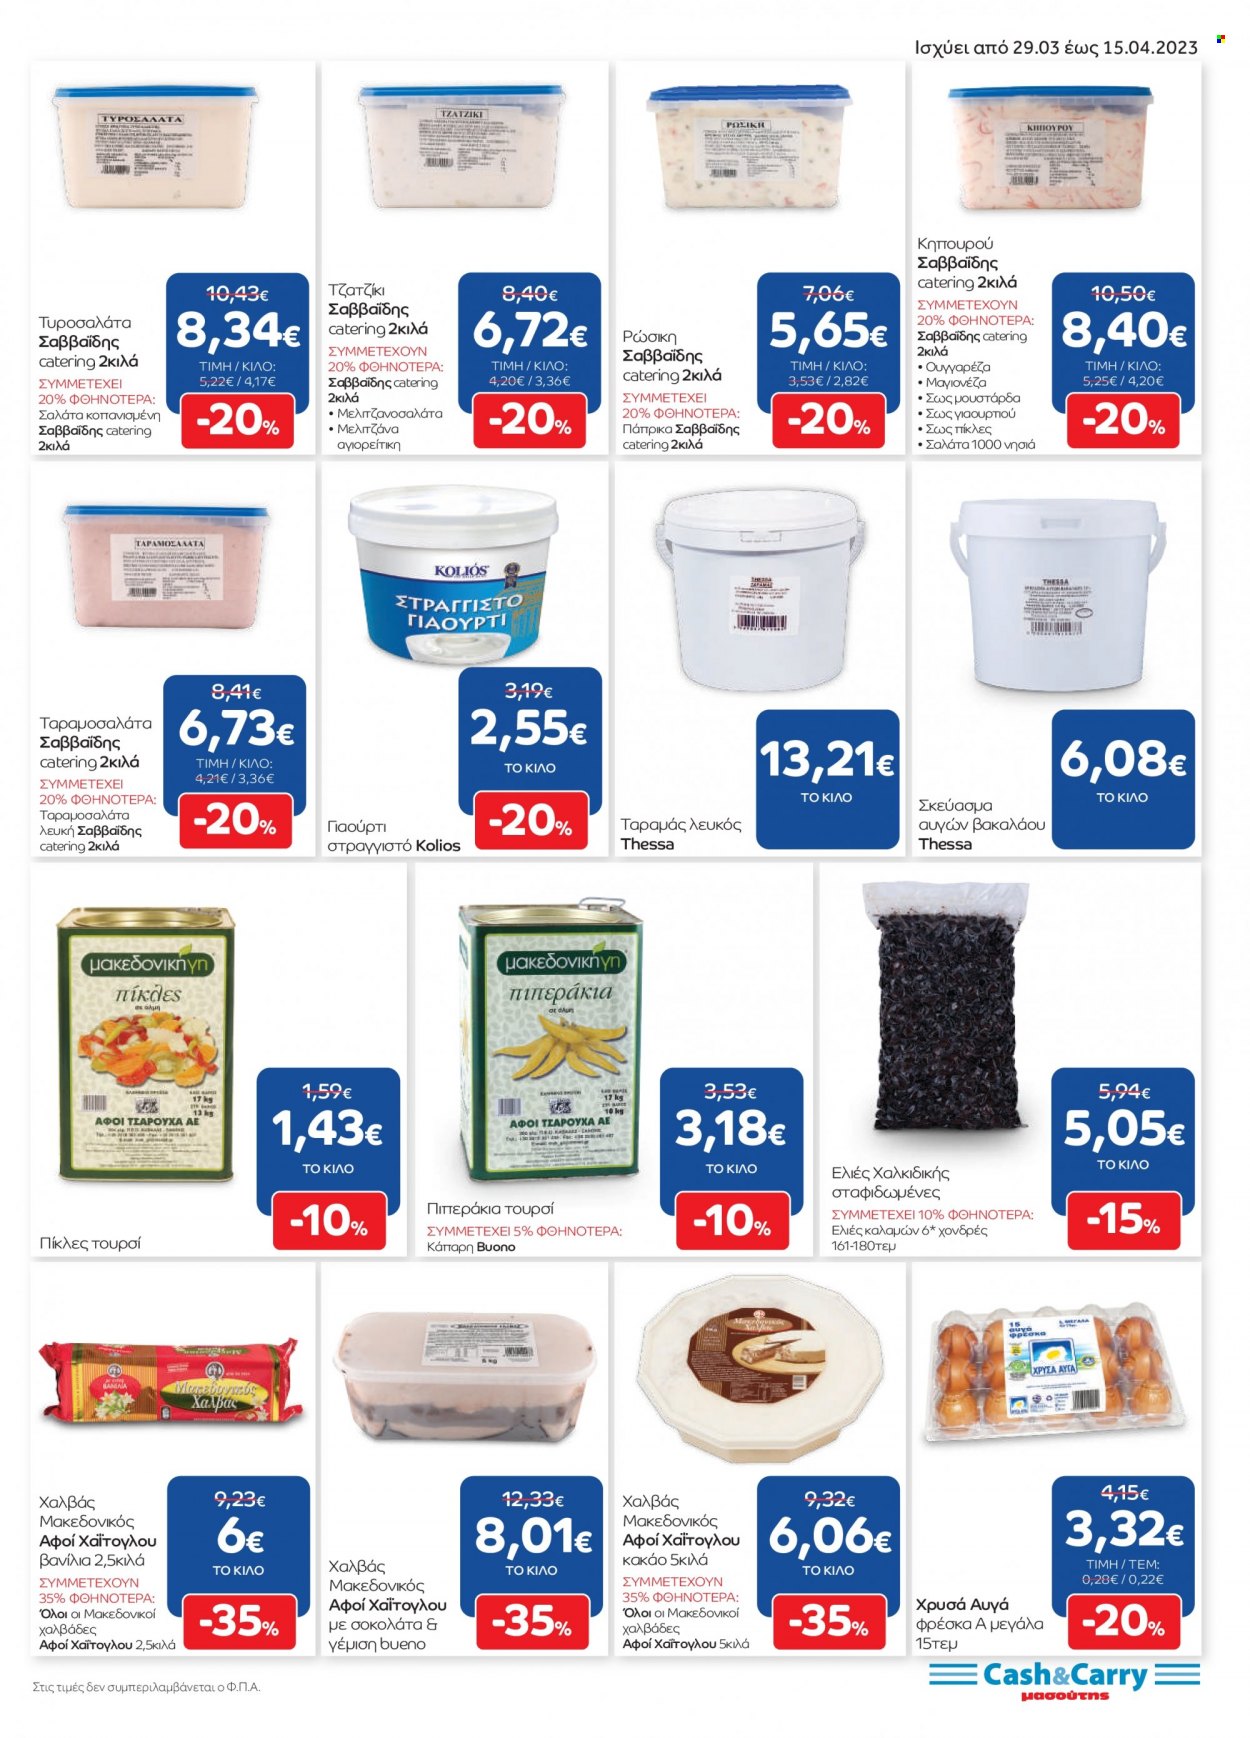 thumbnail - Φυλλάδια Masoutis Cash & Carry - 29.03.2023 - 15.04.2023 - Εκπτωτικά προϊόντα - ελιές, τζατζίκι, γιαούρτι, αυγά, μαγιονέζα, κακάο, κάπαρη, μουστάρδα. Σελίδα 7.